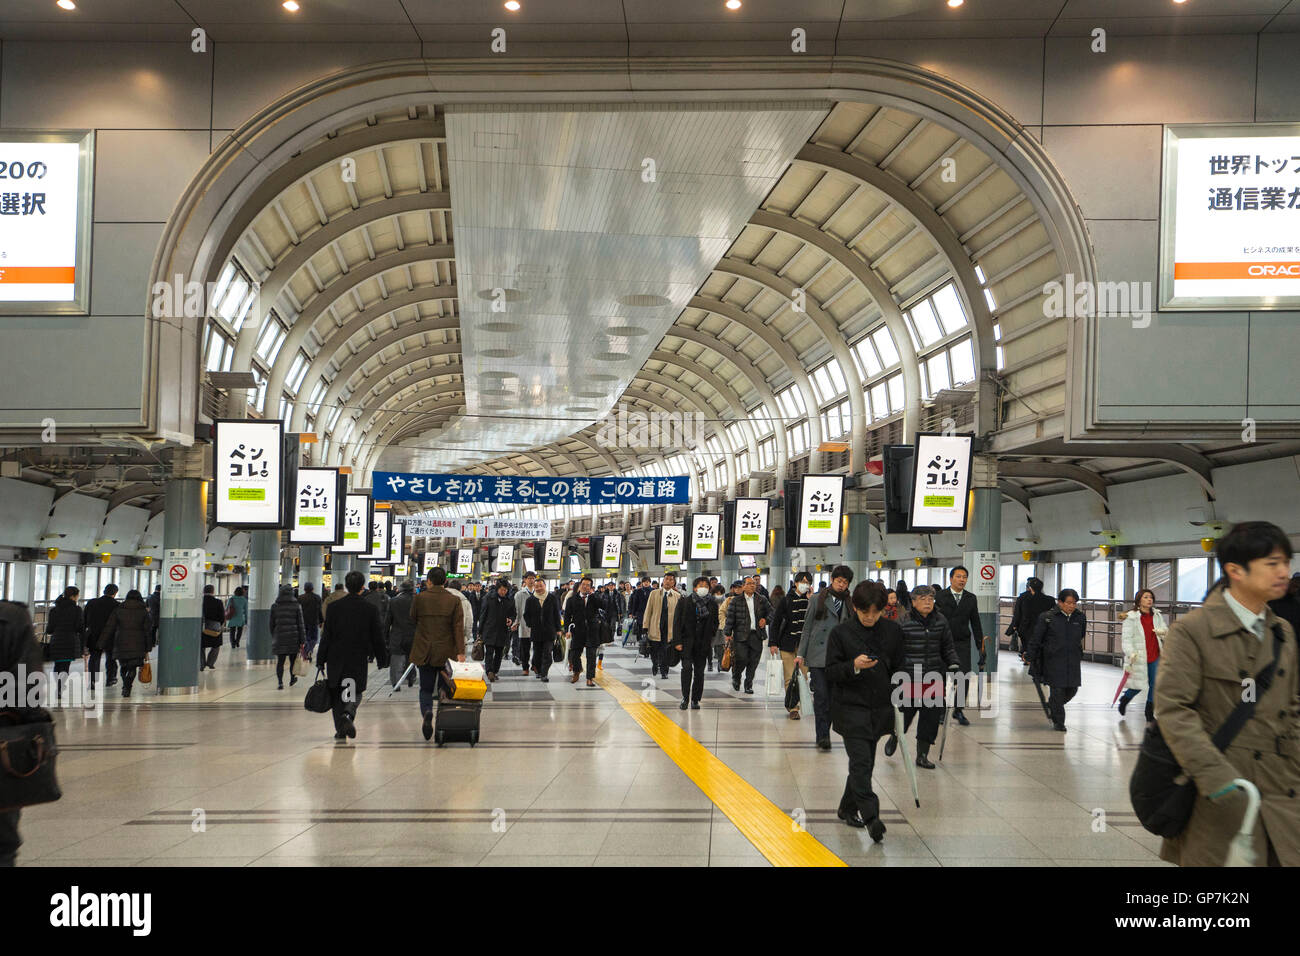 Peoples at shinagawa railway station, tokyo, japan Stock Photo